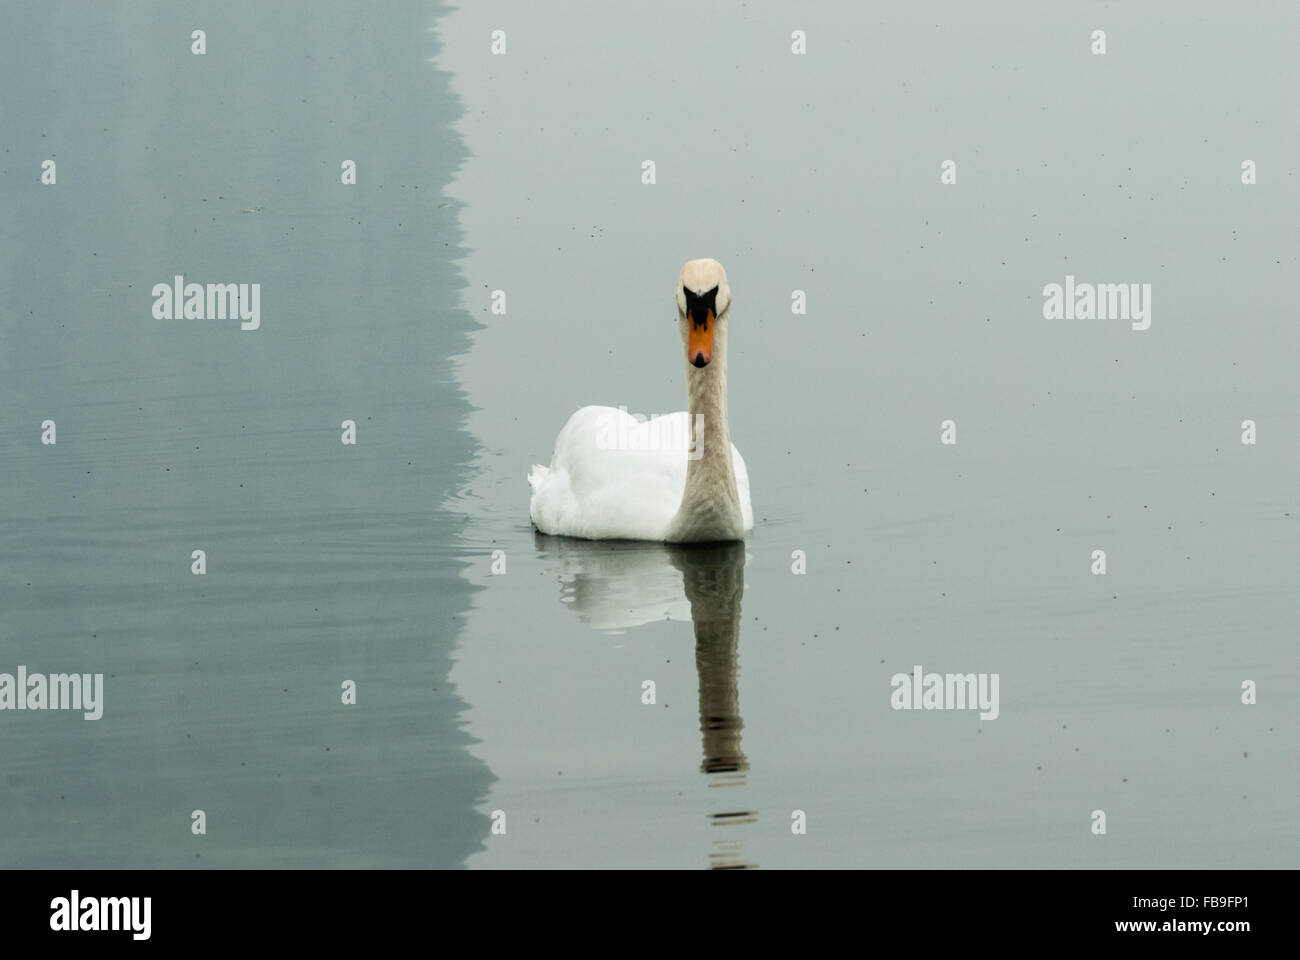 Ritratto di singolo cigno galleggiante su acque calme con la riflessione di cigno e di ombra sul lato sinistro. Foto Stock